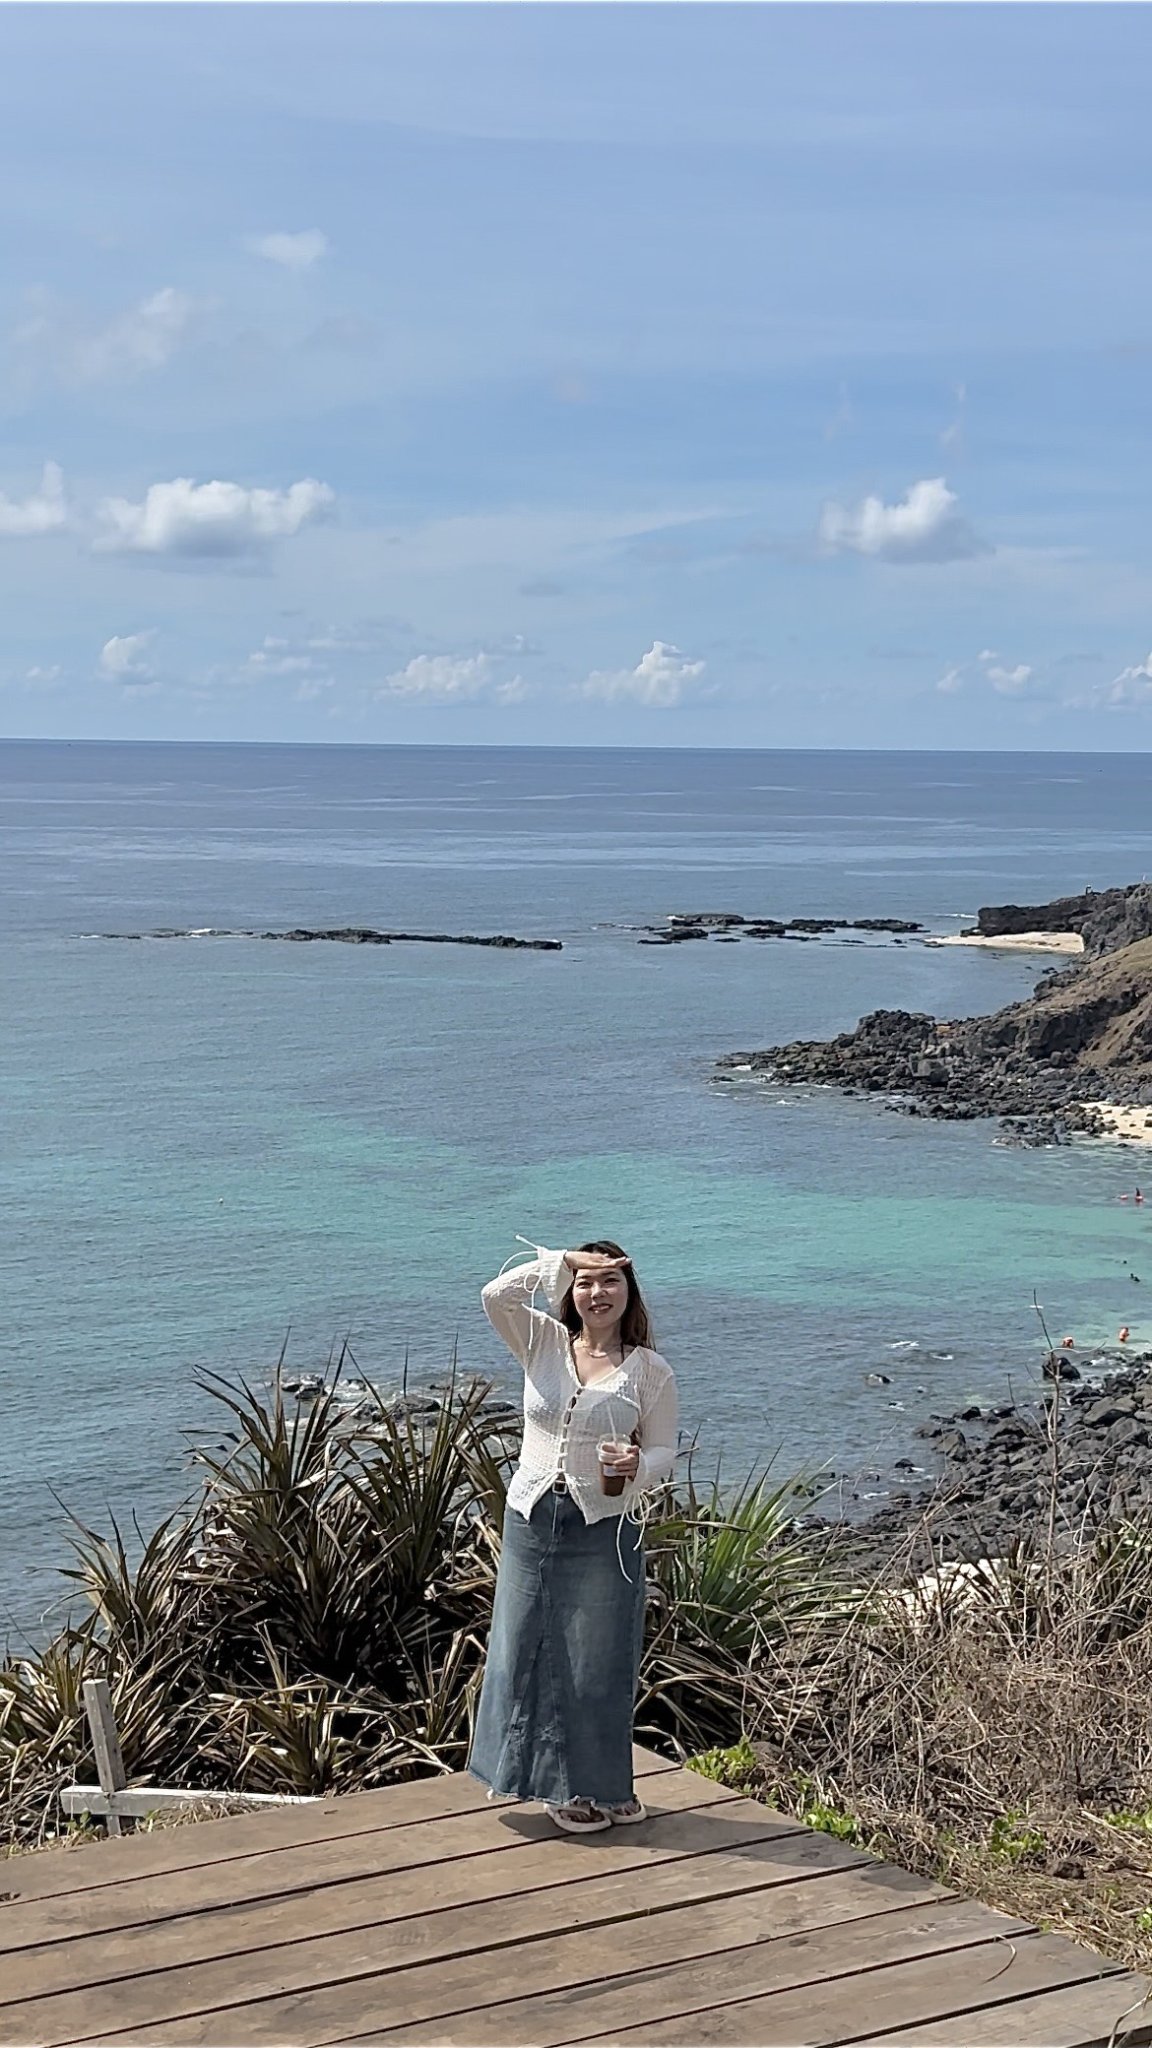 Du lịch tự túc 3N2D ở Đảo Phú Quý - Mình Đã Ăn Gì, Chơi Gì & Chi Bao Nhiêu Tiền  Pie Travel 24...jpg